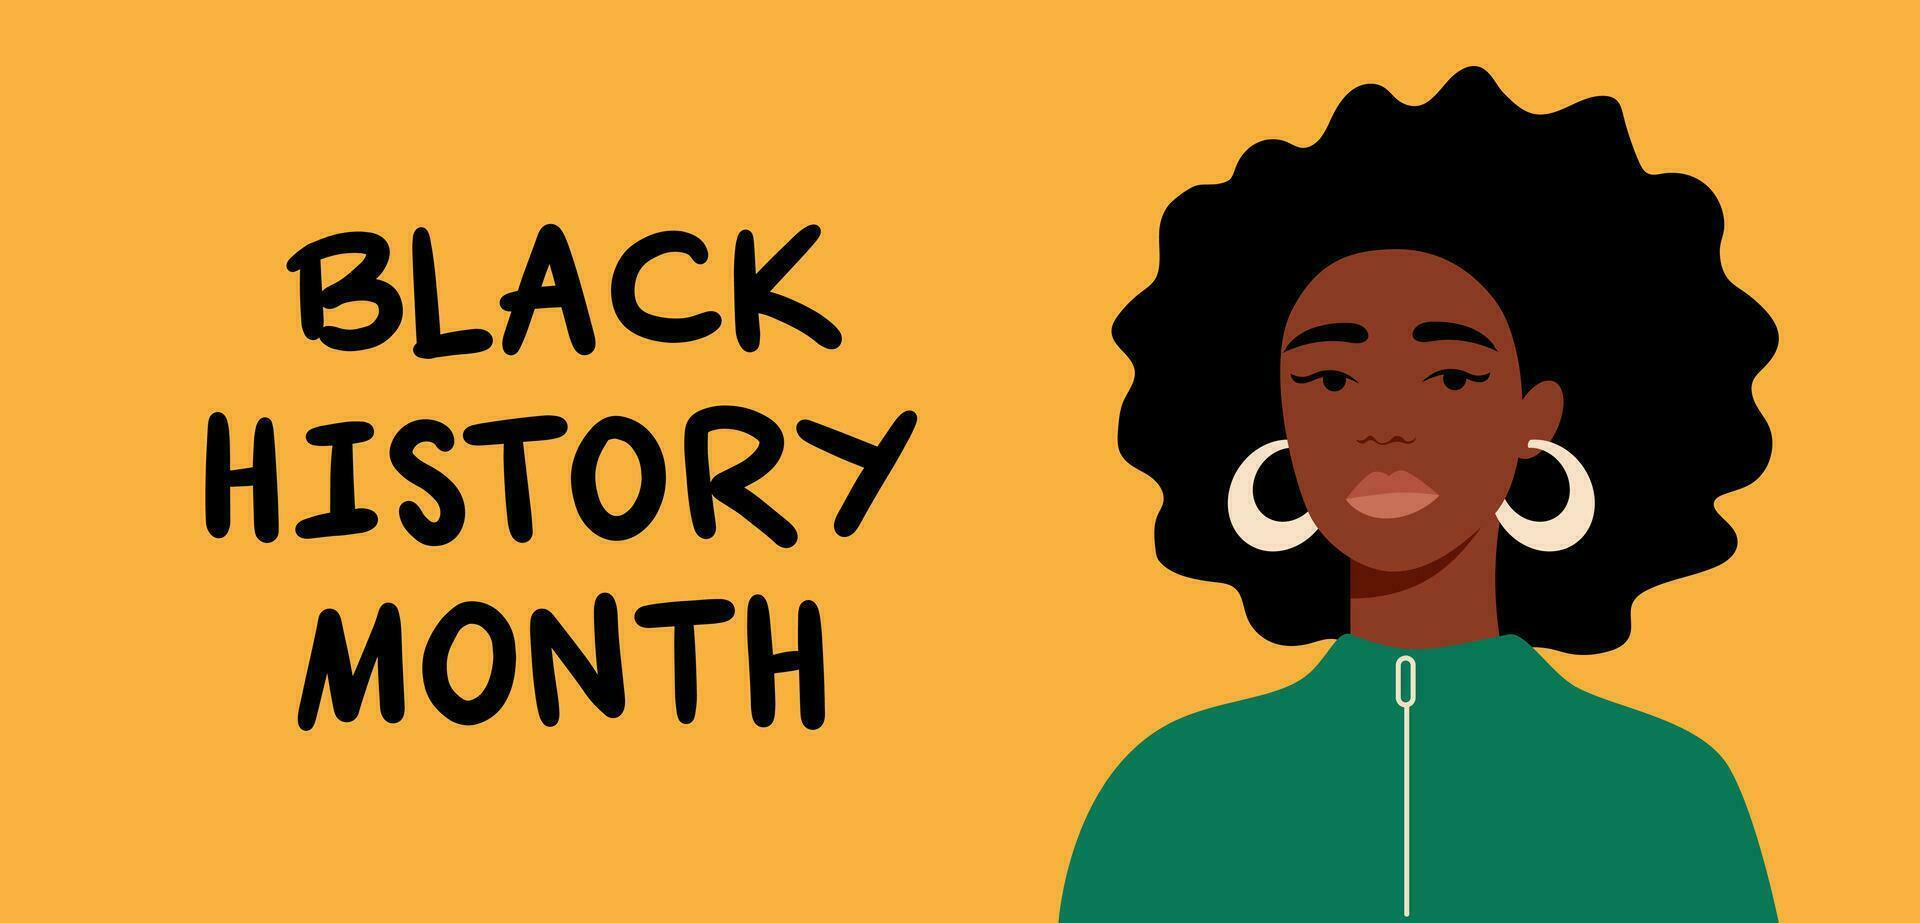 Porträt von ein schwarz Frau. ein Afroamerikaner Mädchen. schwarz Geschichte Monat. Karikatur, Wohnung, Vektor Illustration. horizontal Banner